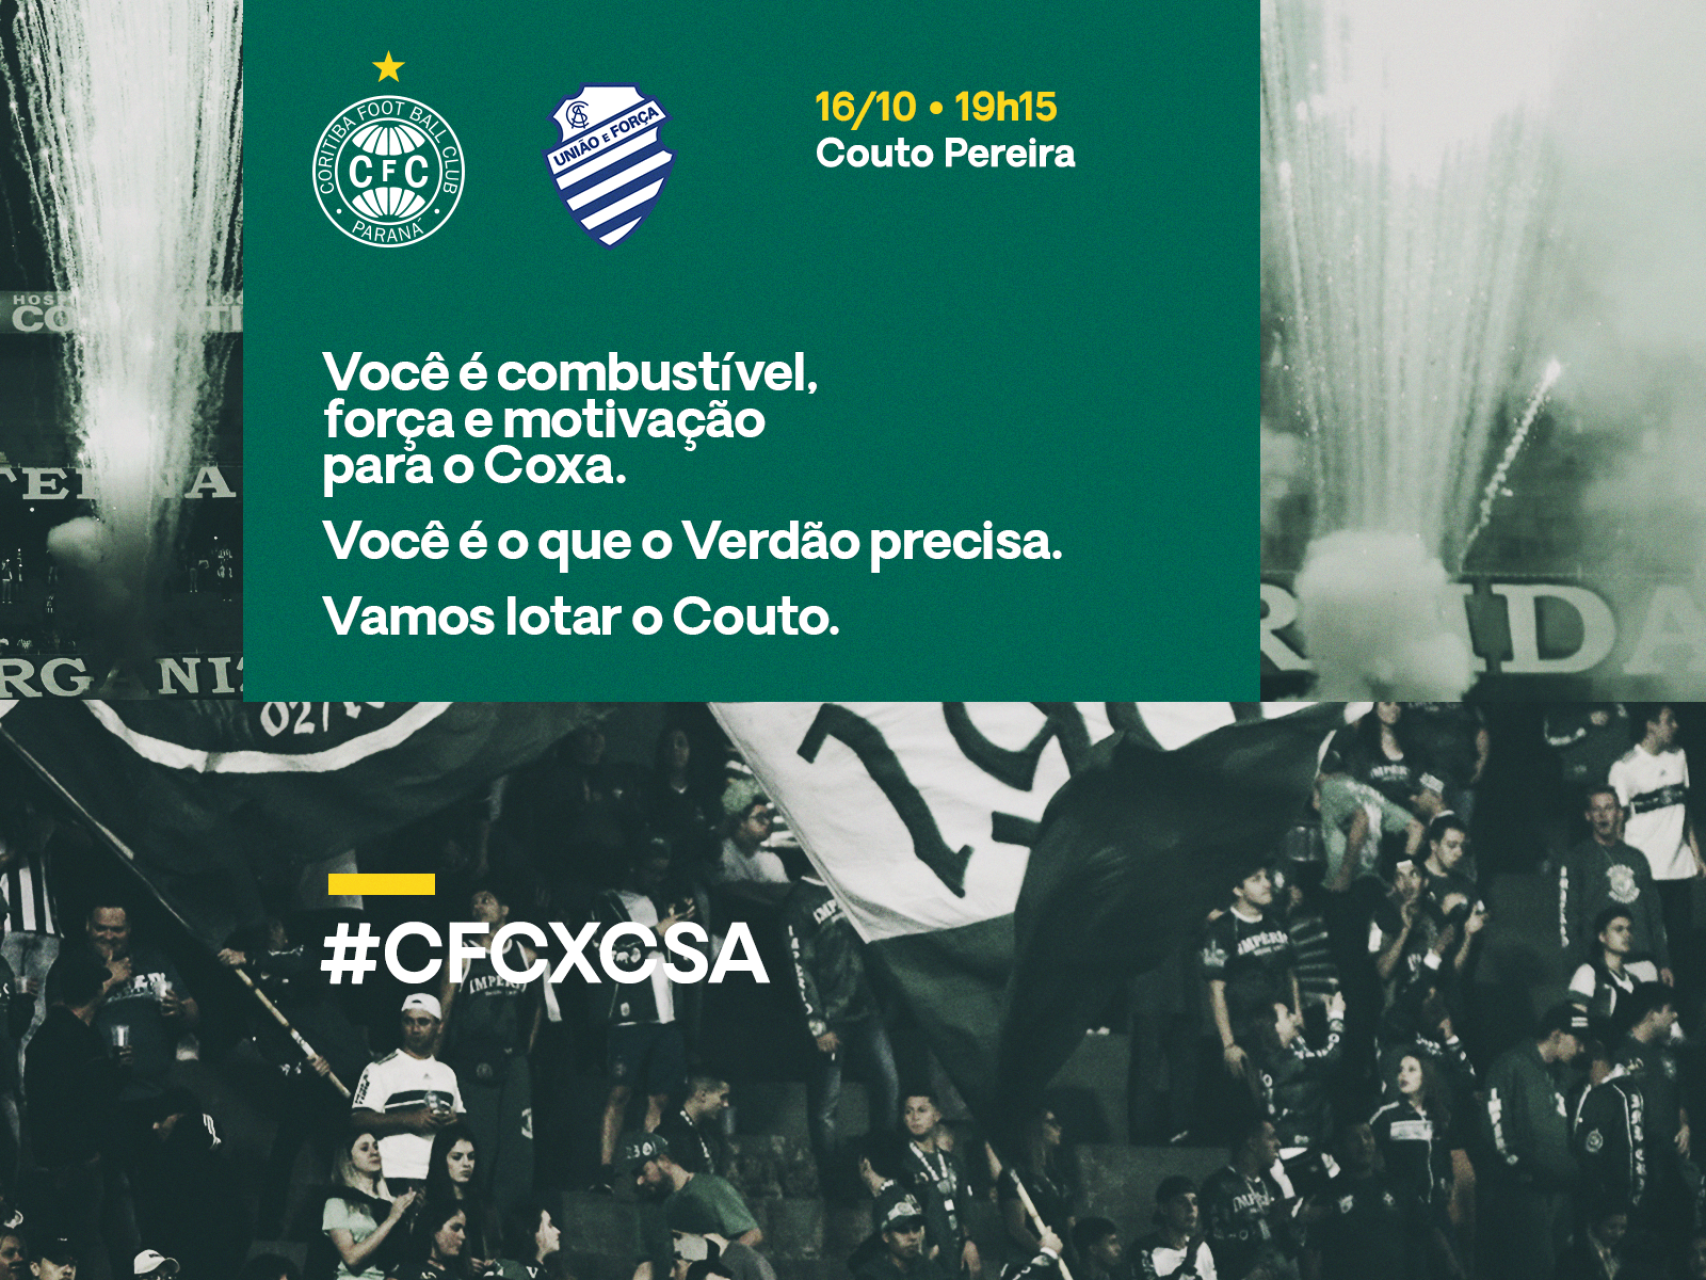 Pr-Jogo #CFCxCSA